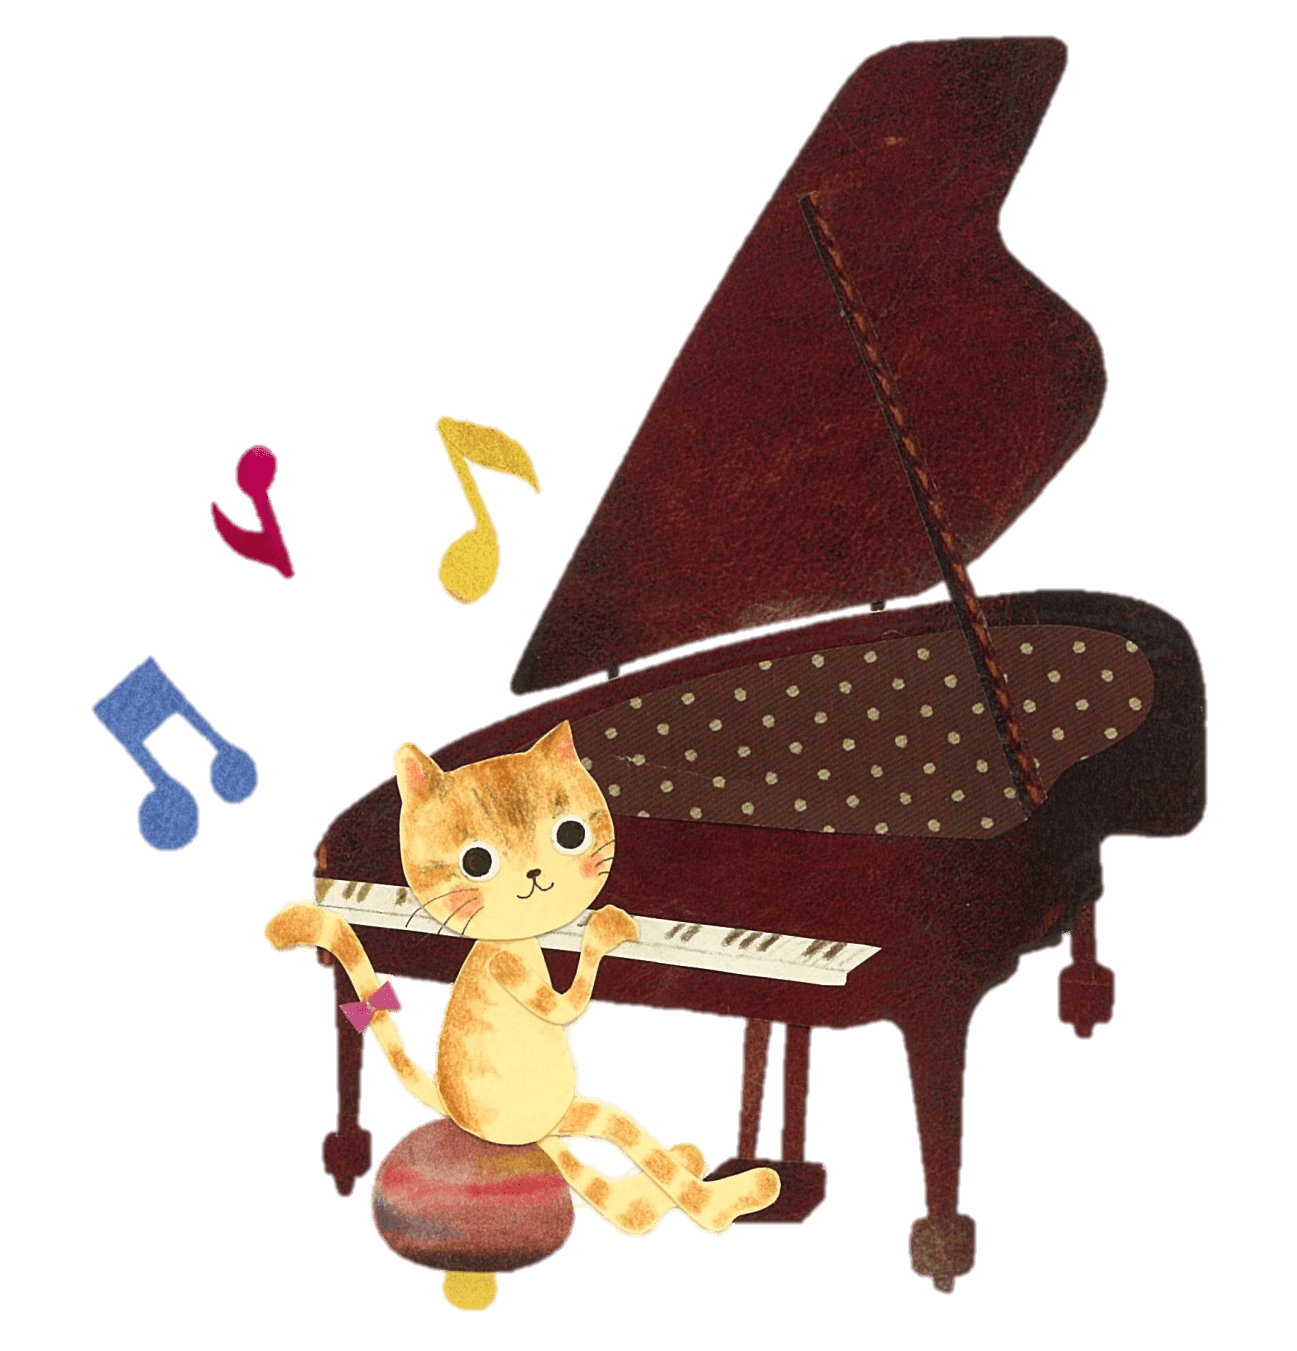 踏まれた猫の逆襲 The Revenge Of The Cat That Was Stepped On ピアノ演奏 横浜市鶴見区 Mikikoピアノ教室